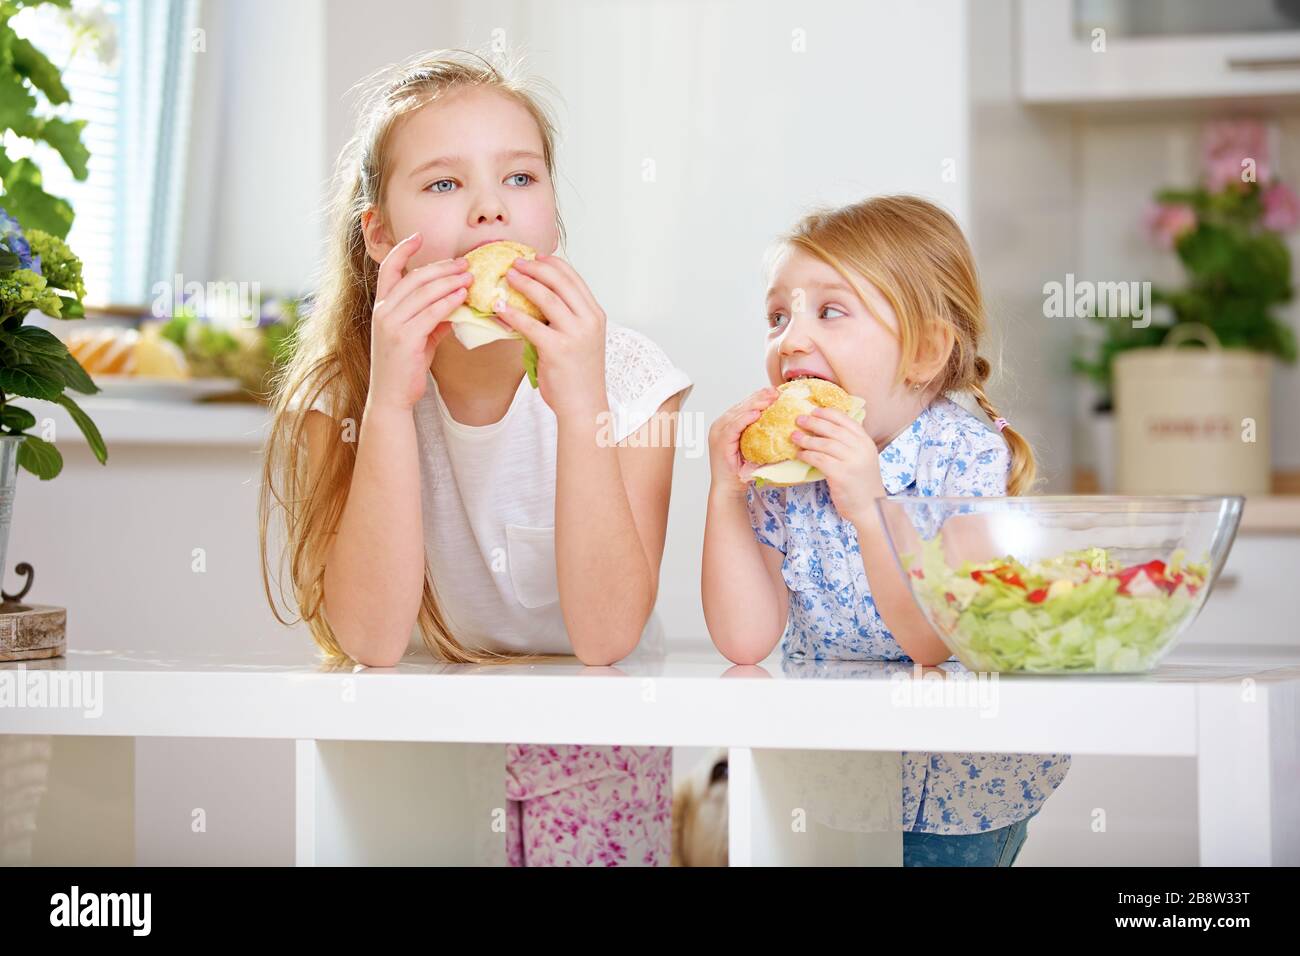 Deux enfants d'une famille mangent des petits pains pour le petit-déjeuner dans la cuisine Banque D'Images